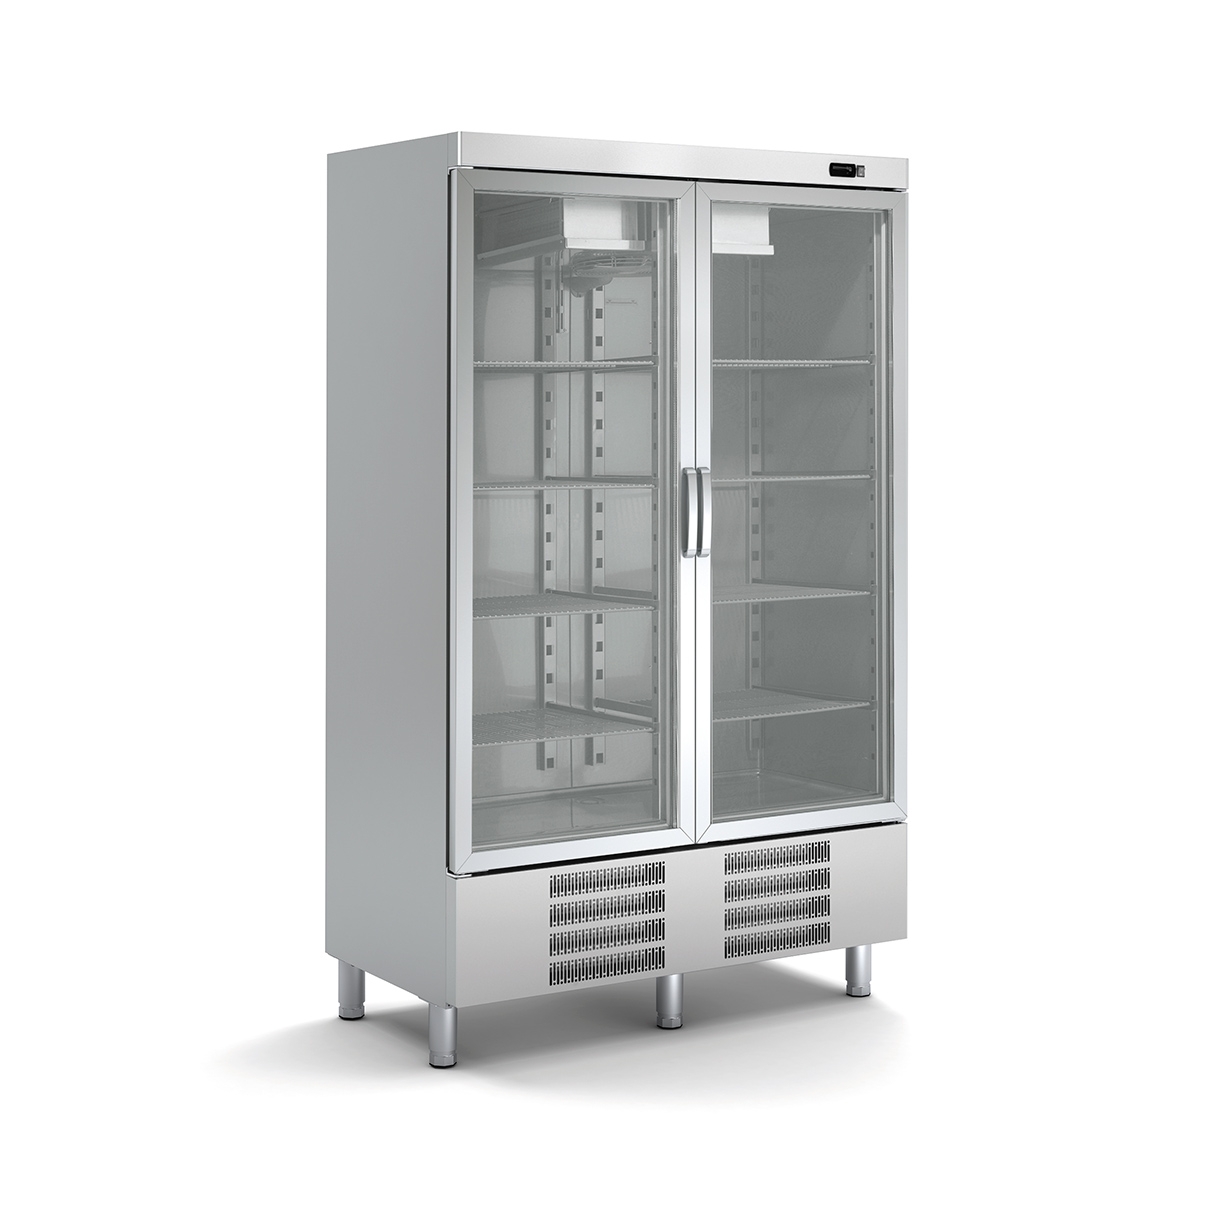 SNACK Refrigerated Cabinet ASVD-125